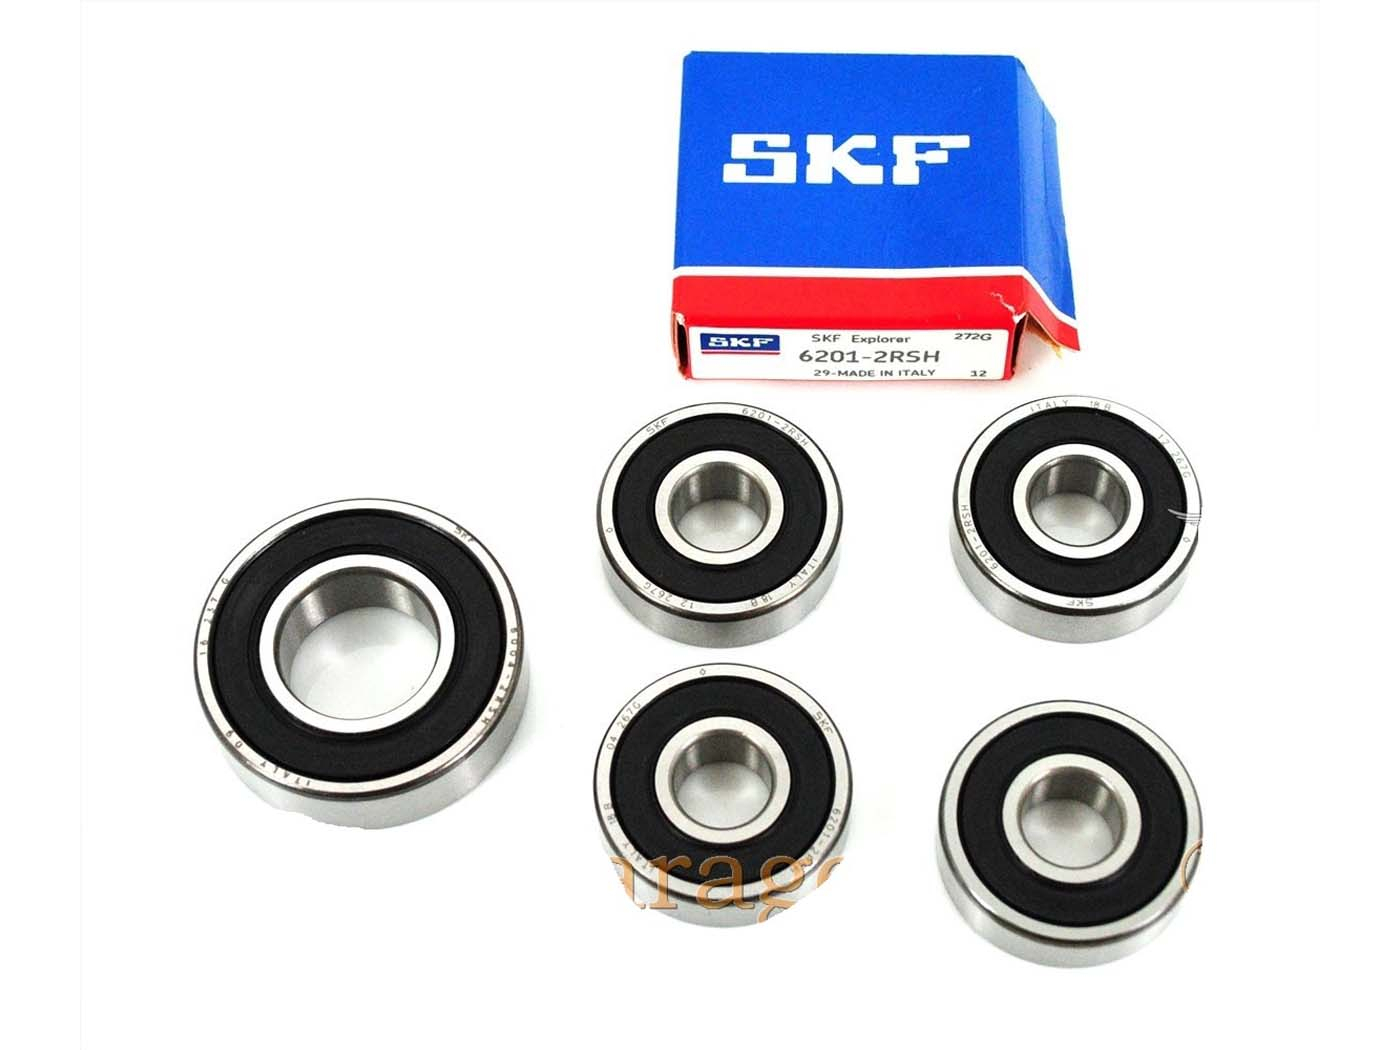 Wheel Bearing SKF 5 4x12/32 1x20/42 For Kreidler Florett RS, TM, RMC, LF, LH, Egg Tank, Super 4